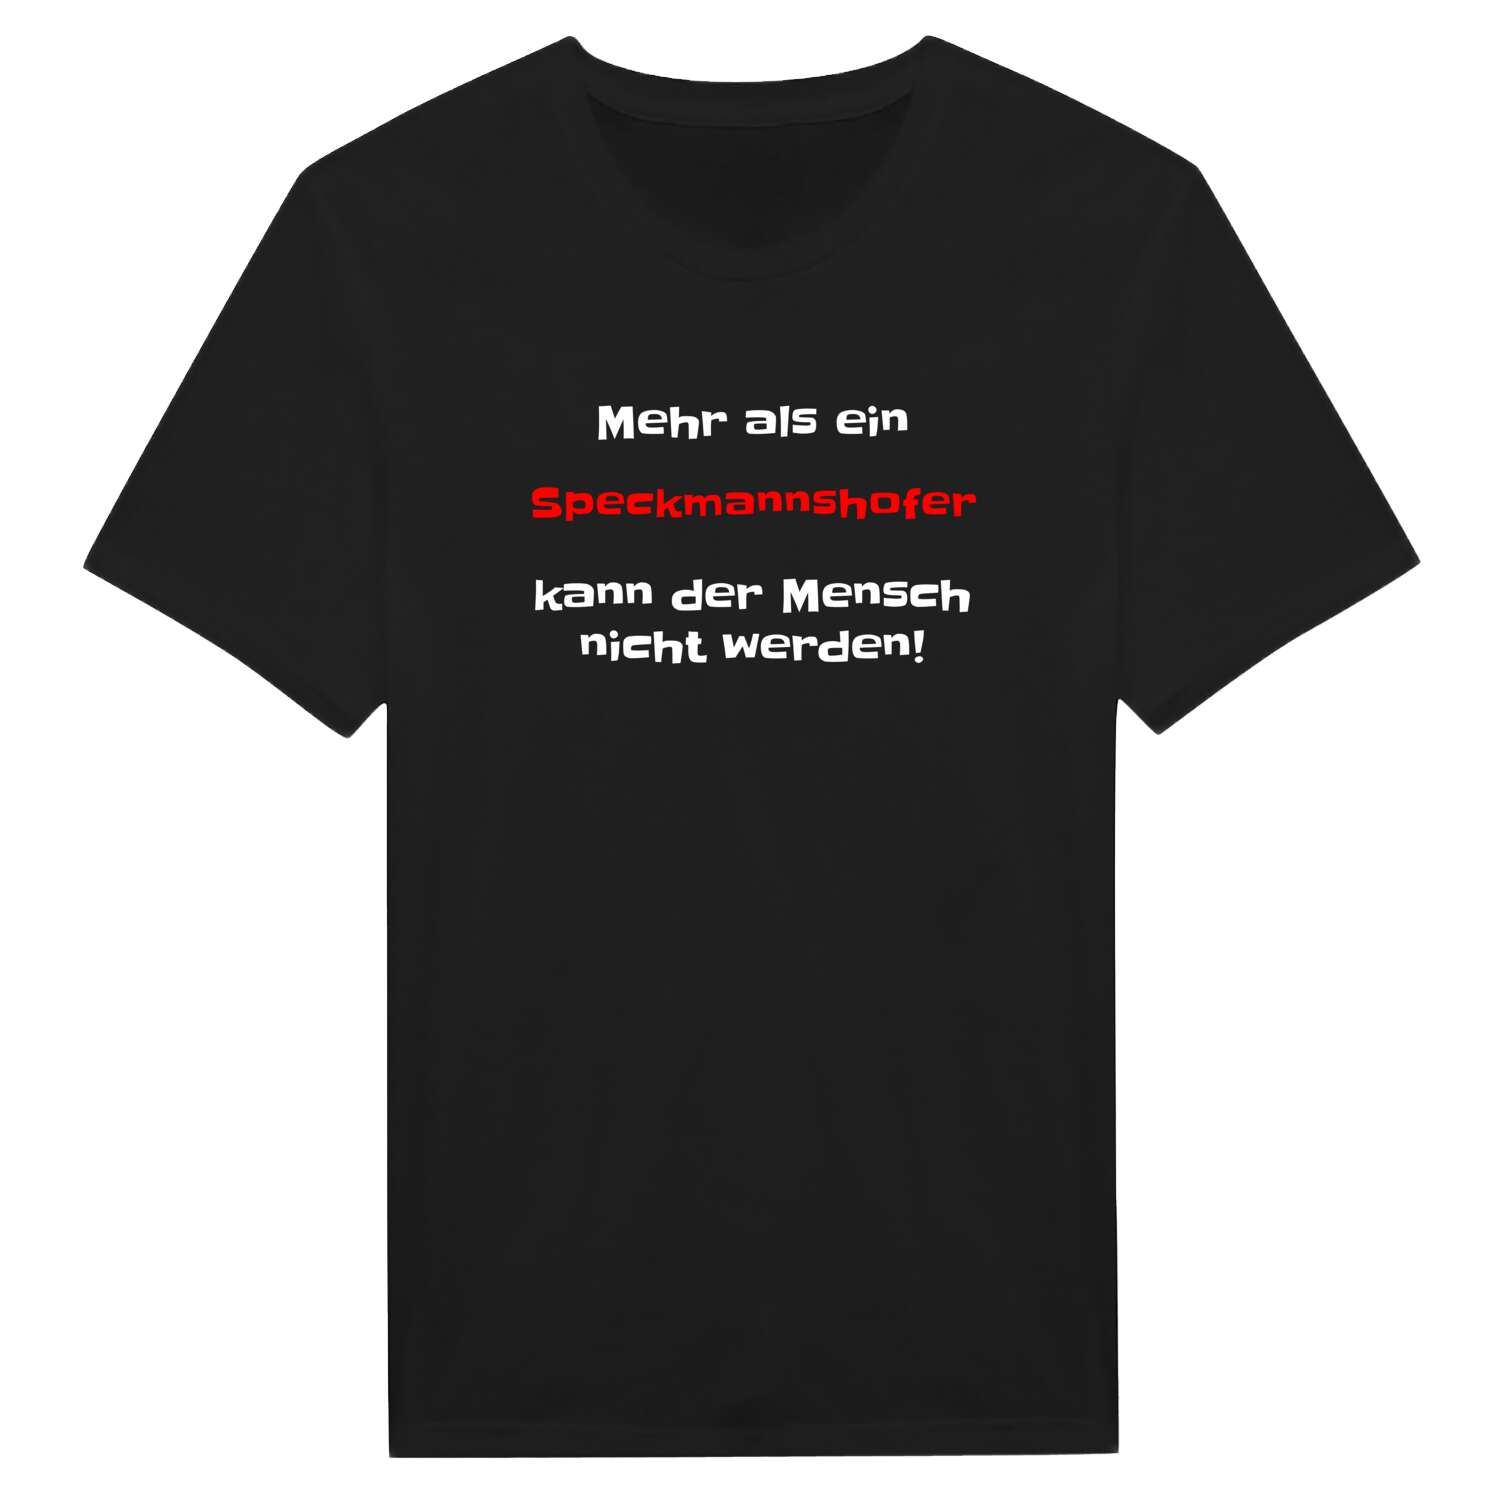 Speckmannshof T-Shirt »Mehr als ein«